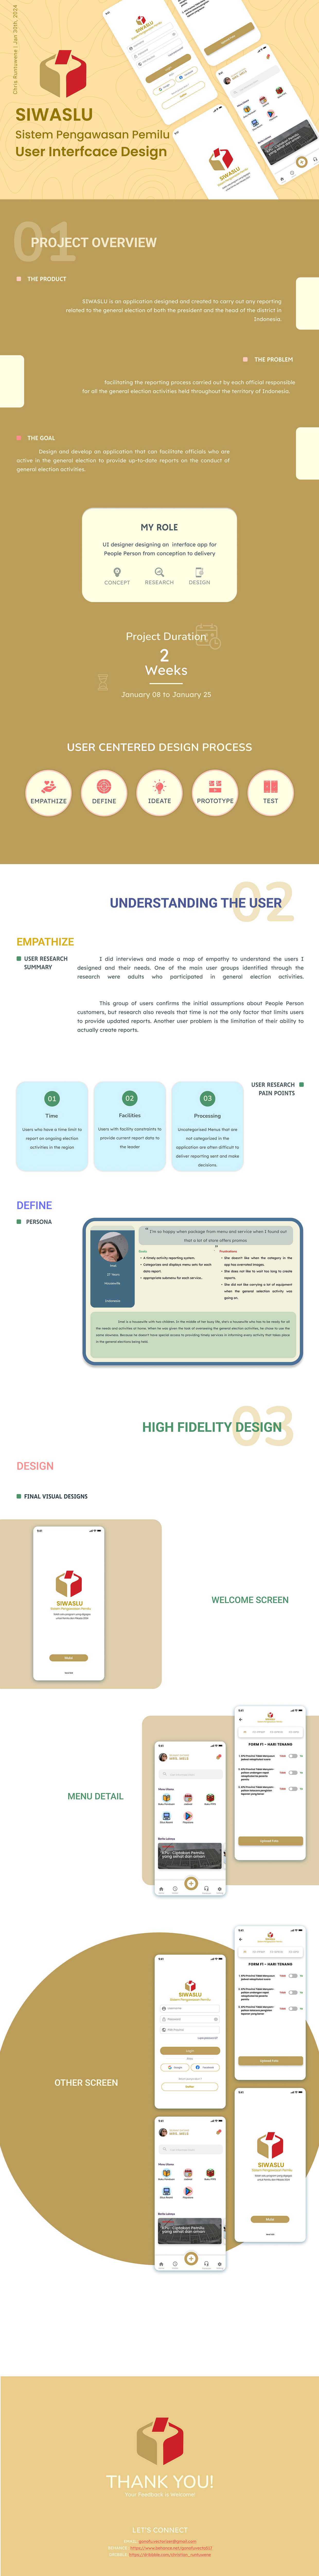 UI/UX ui design ux Case Study iOS App graphic design  Mobile app interface design ux roadmap